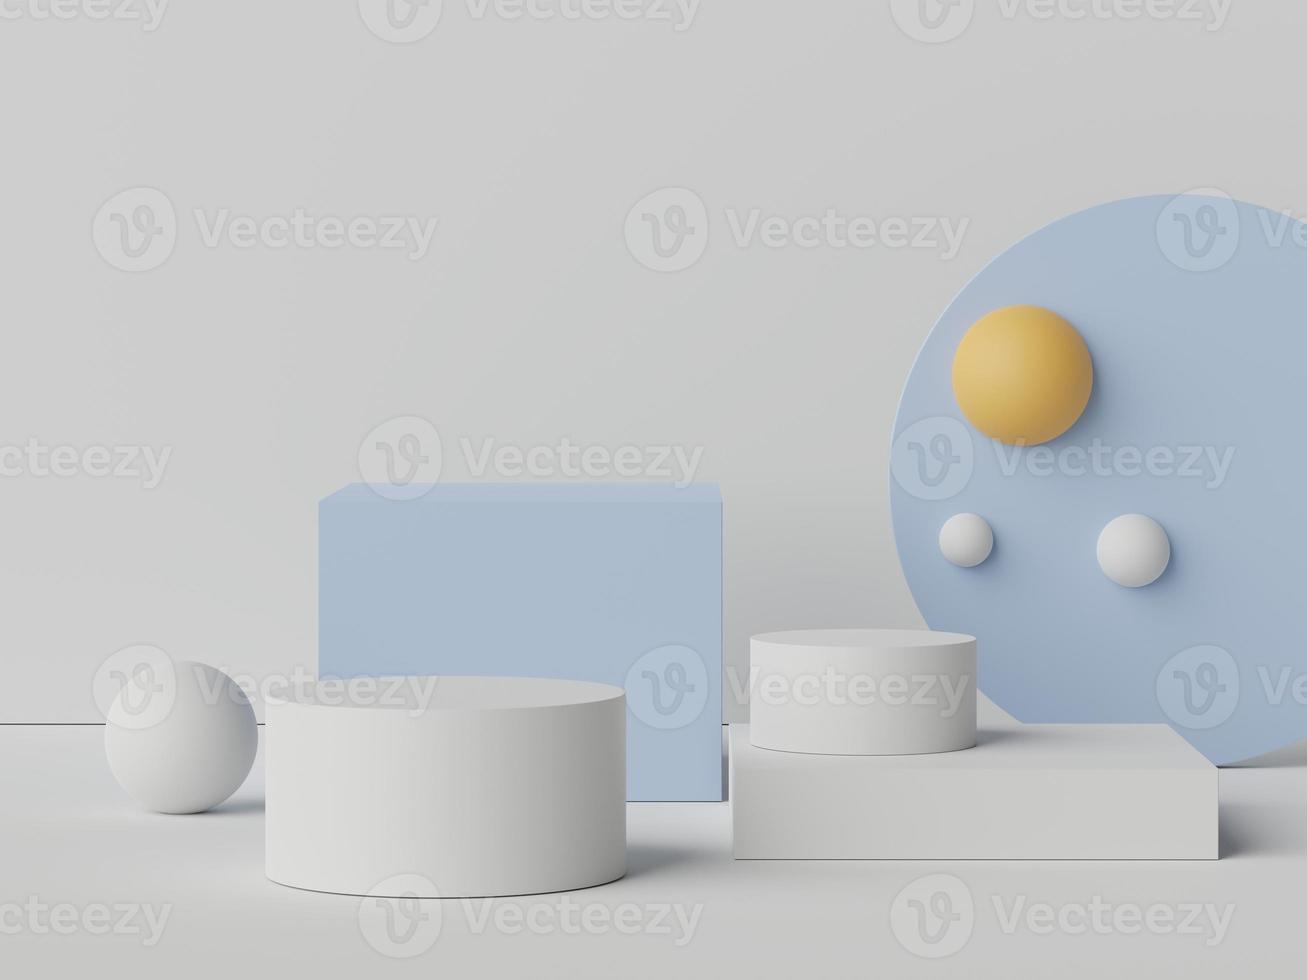 Representación 3d de escena mínima pastel de podio blanco en blanco con tema de tonos tierra. color saturado apagado. diseño de formas geométricas simples. foto